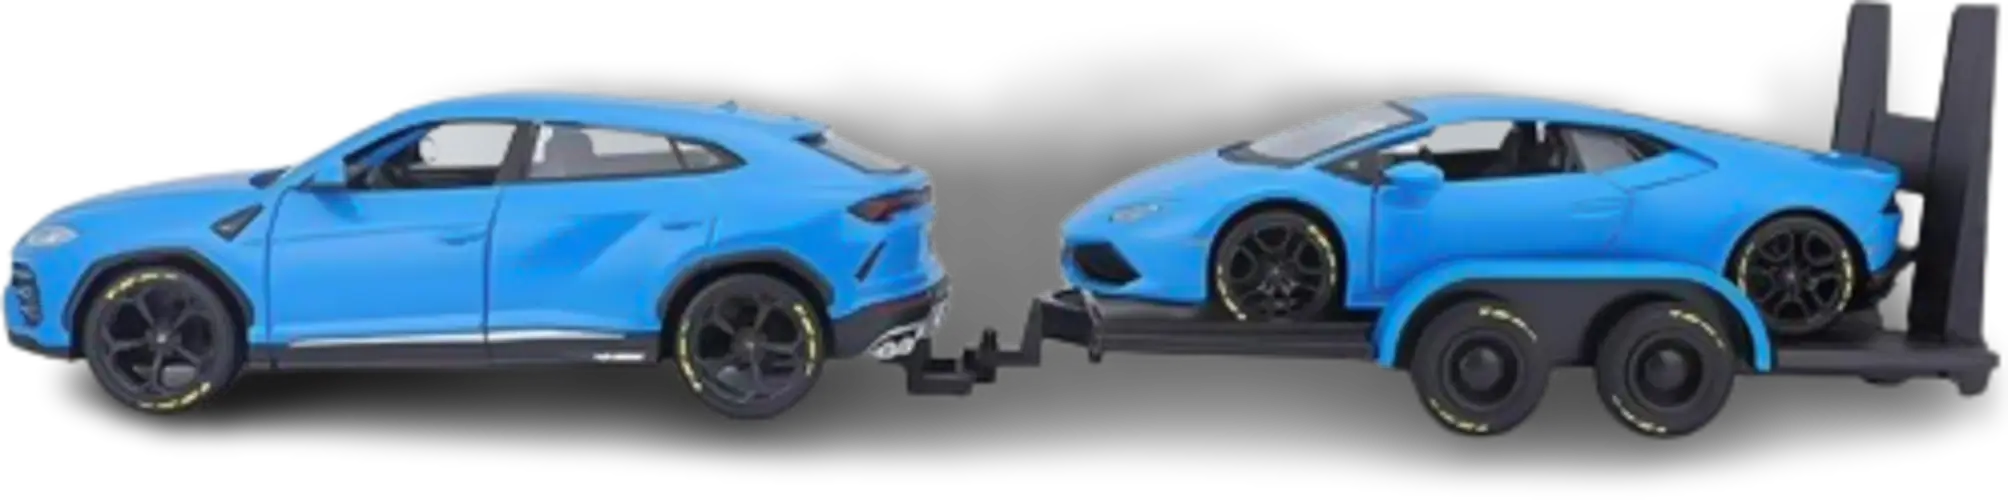 Maisto Lamborghini Urus + Lamborghini Huracan (1:24) - Diecast Special Edition - Blue